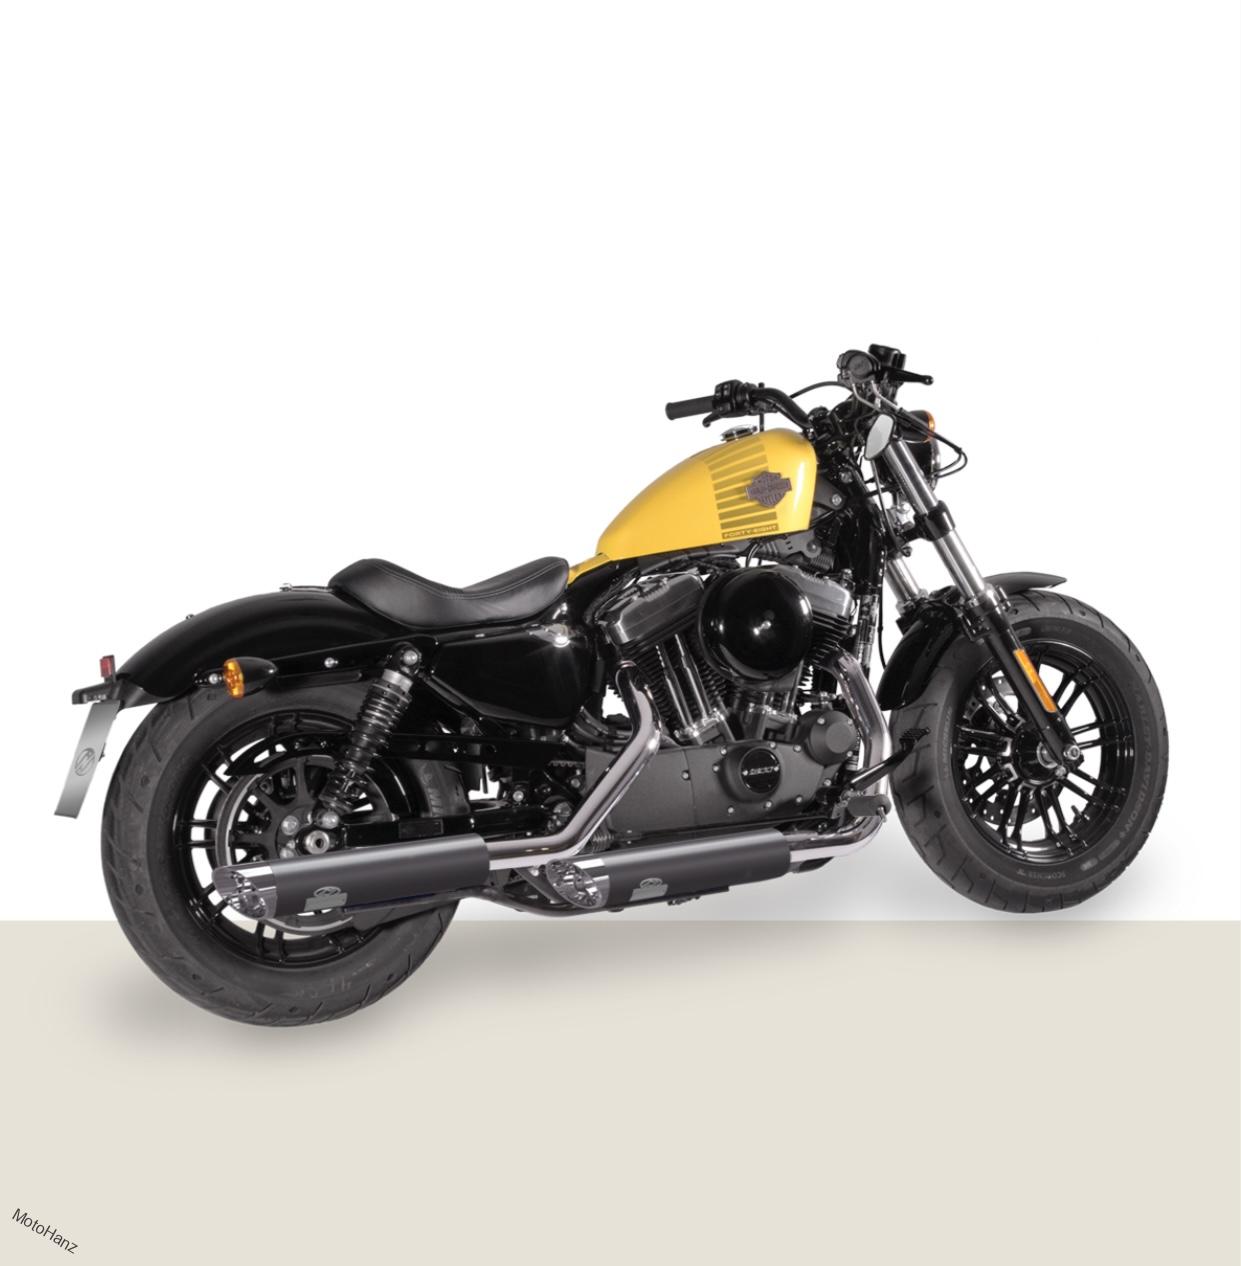 Elektronicky stavitelný výfuk Jekill&Hyde na Harley Davidson Sportster 2014-2020